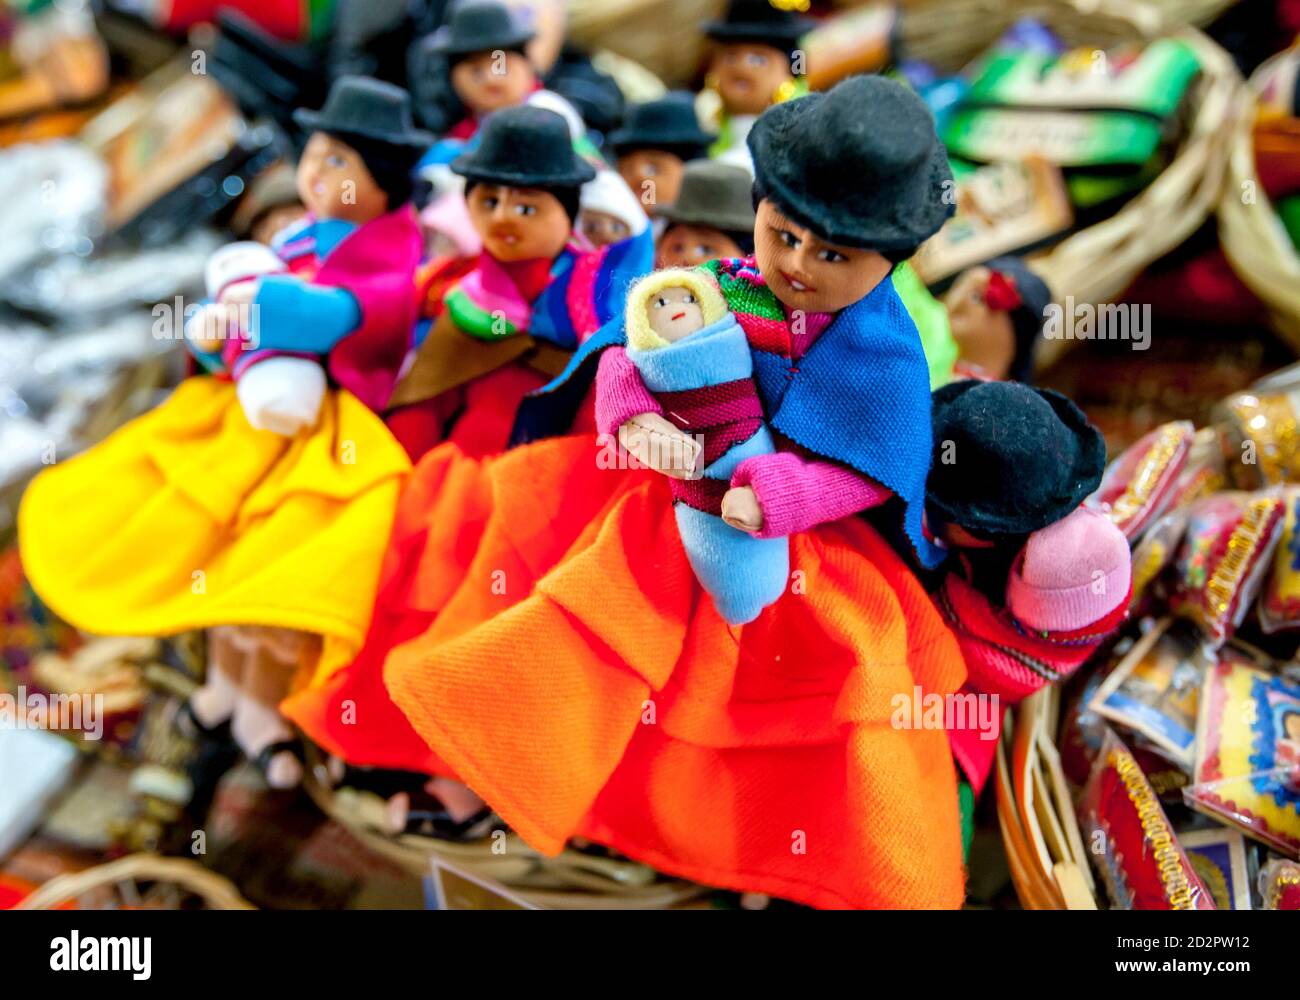 Bambole artigianali in vendita in un negozio al mercato delle streghe a la Paz in Bolivia. Il mercato è gestito da medici stregoni locali noti come yatiri. Foto Stock